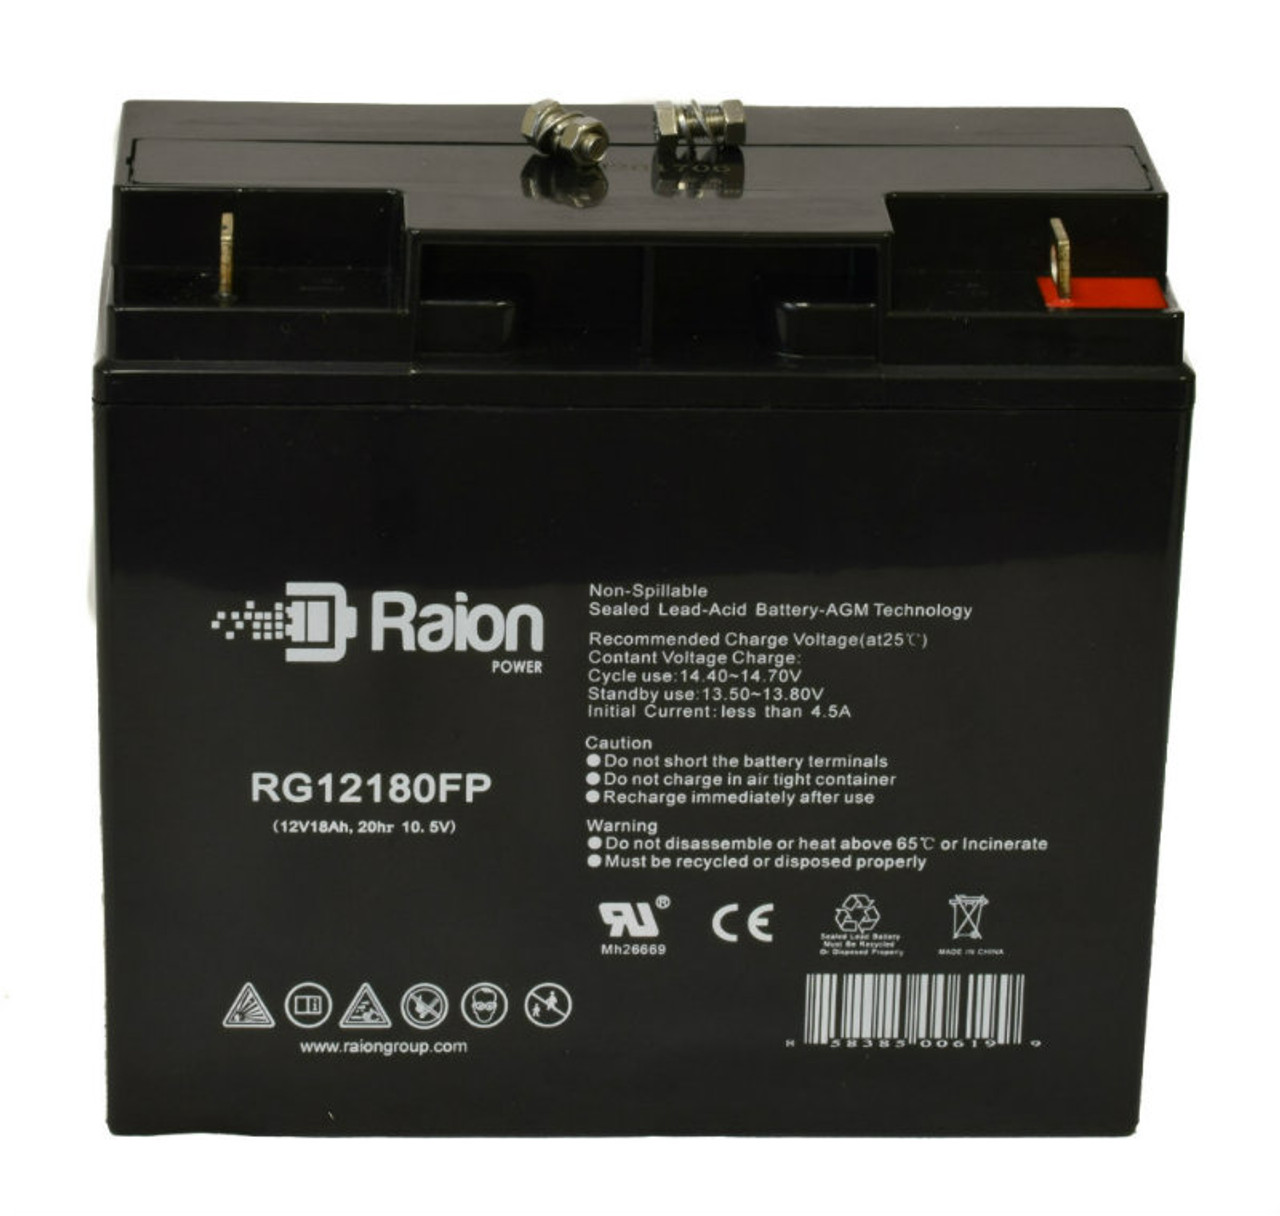 Raion Power RG12180FP 12V 18Ah Lead Acid Battery for FirstPower FP12200D